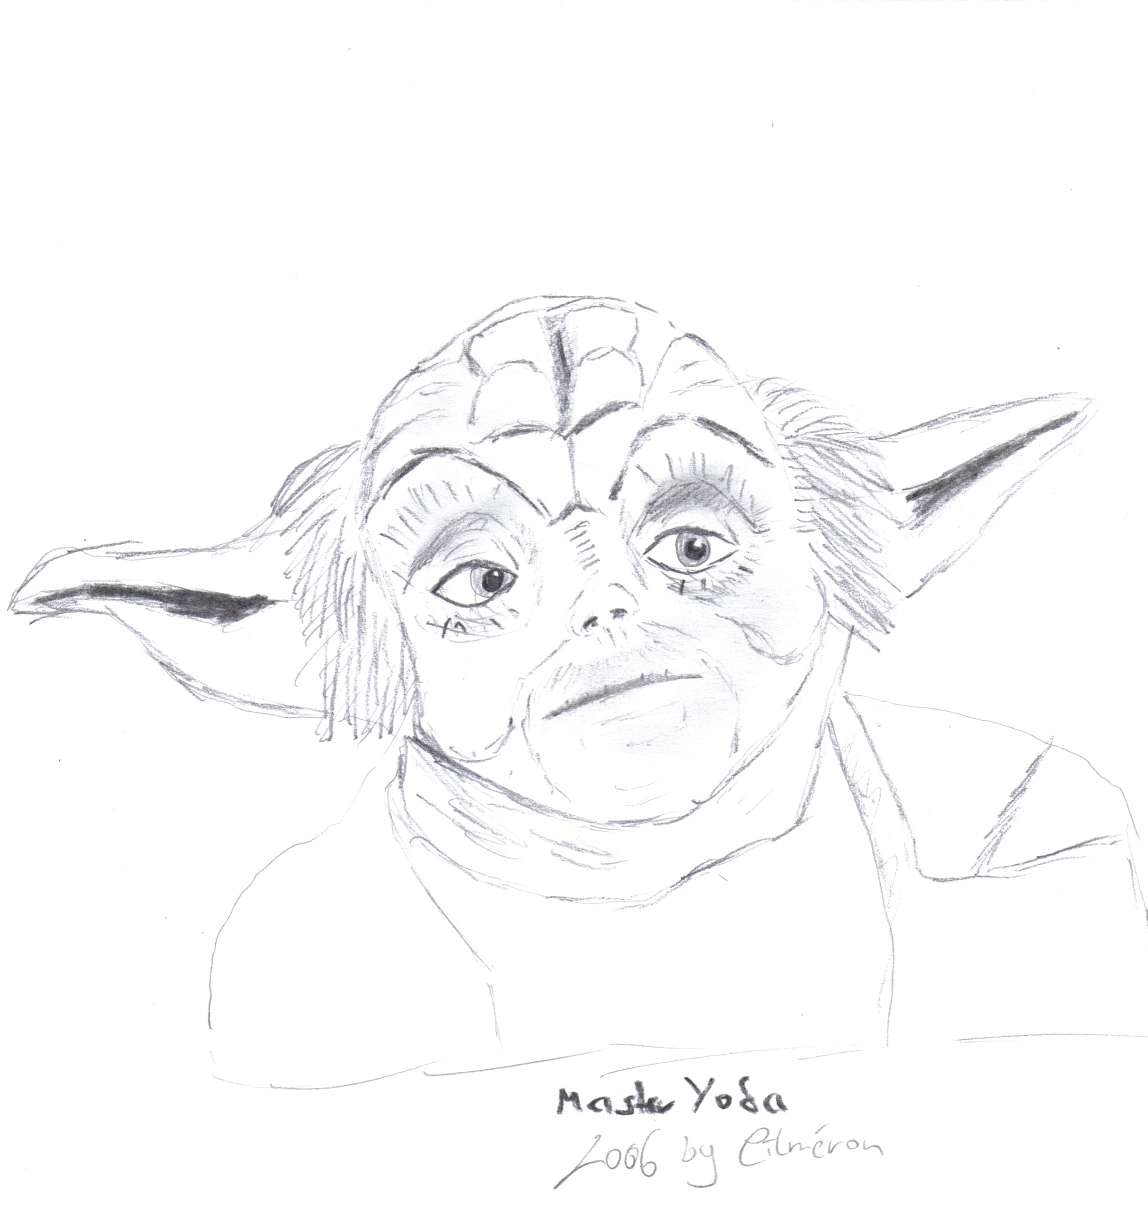 Master Yoda by Cilmeron